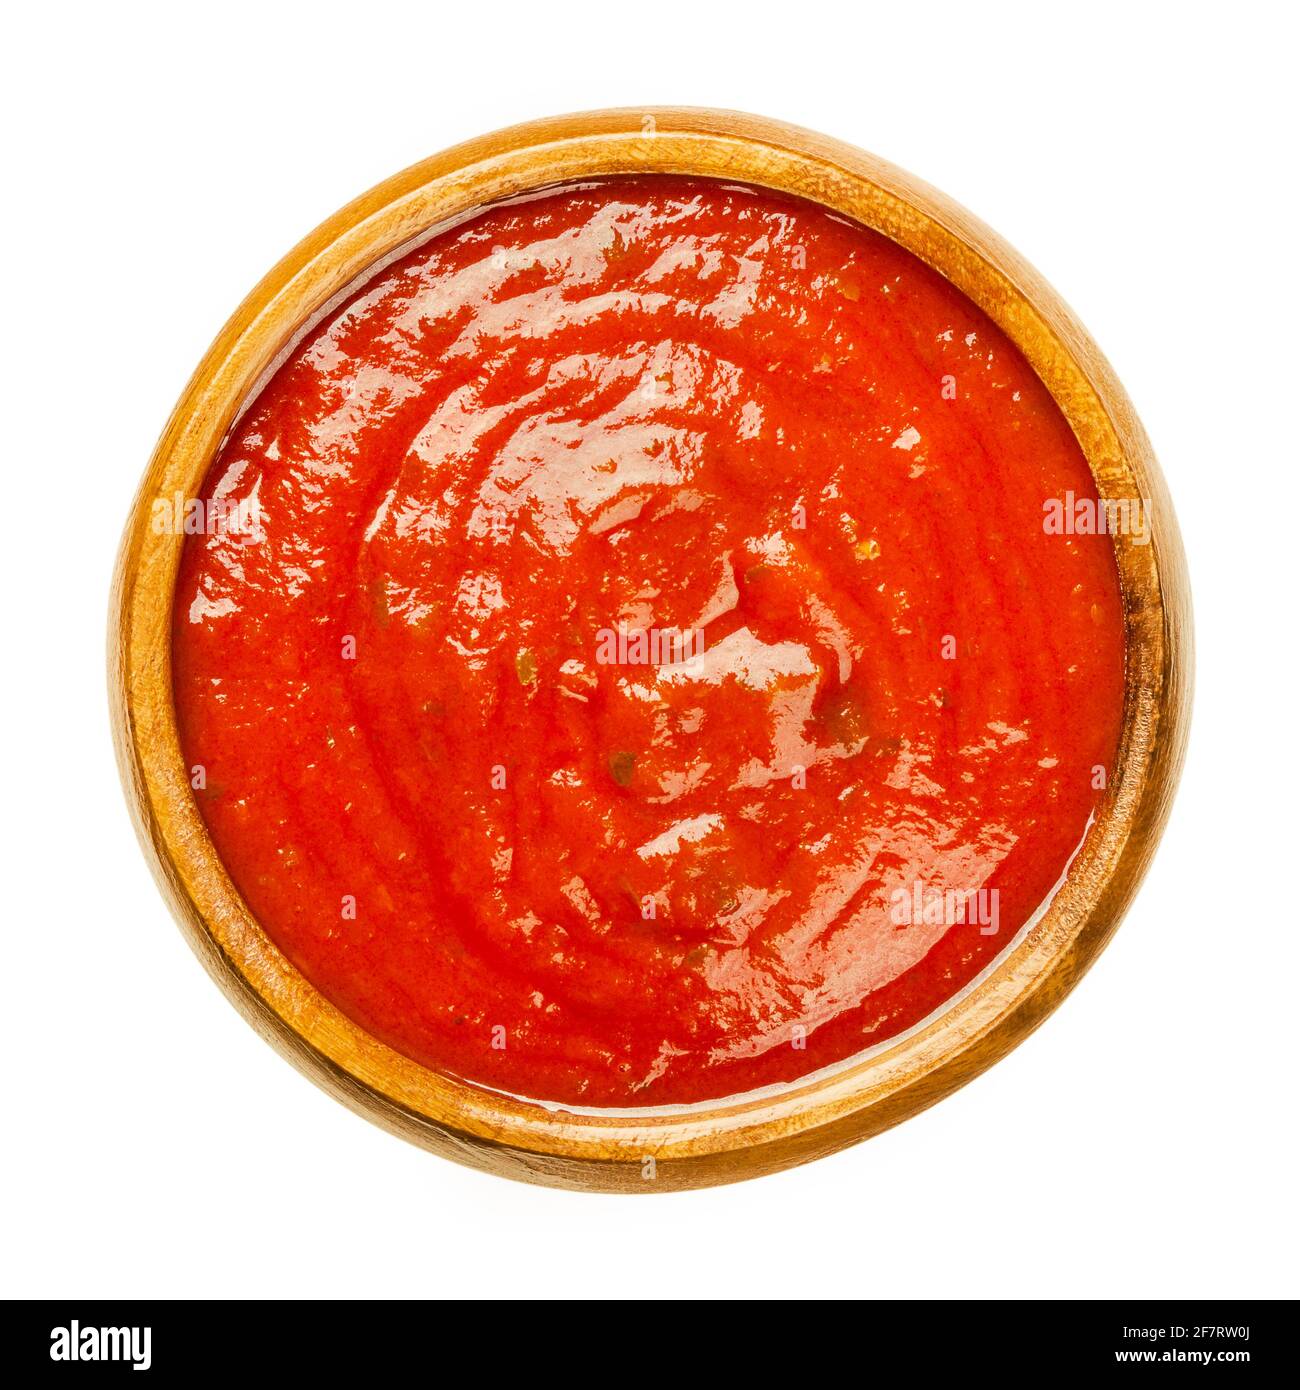 Sauce tomate aux herbes, dans un bol en bois. Sauce napolitaine ou salsa roja, faite à partir de tomates et d'herbes, cuites à l'huile d'olive. Un sugo végétalien. Banque D'Images